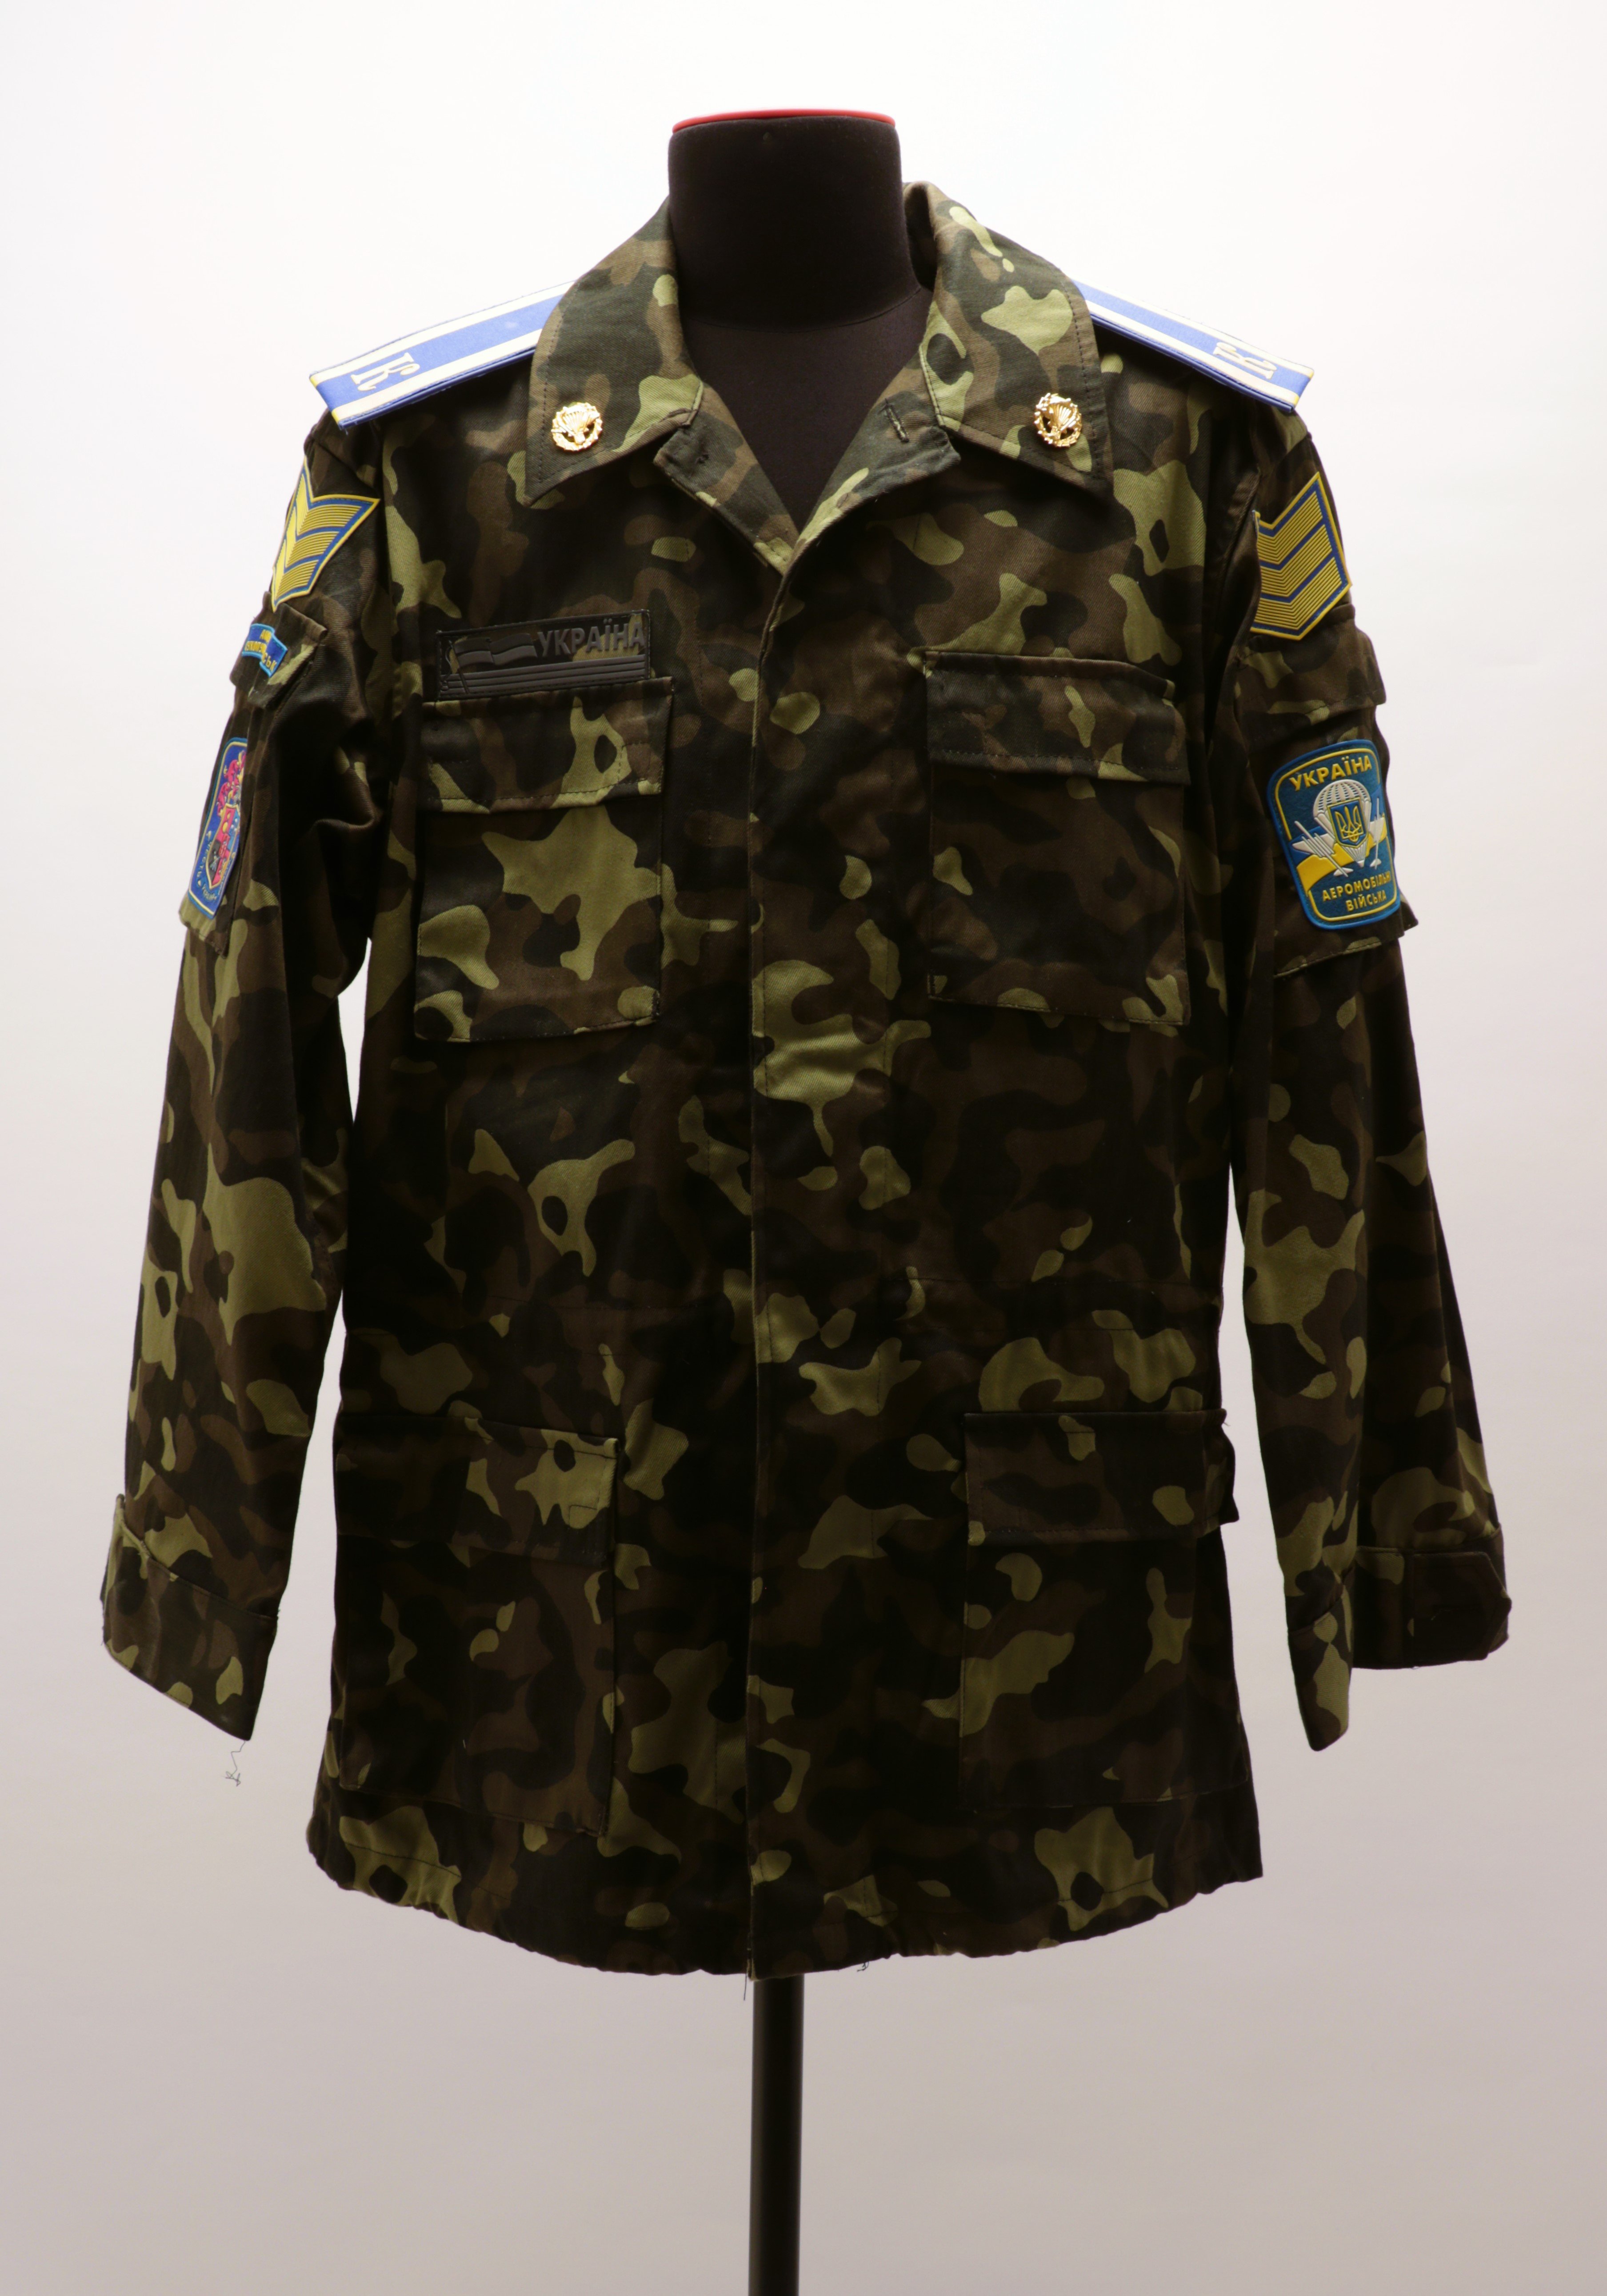 Uniformjacke eines Offiziersschülers der Luftlandetruppen der Streitkräfte der Republik Ukraine, 2010 (Museum Berlin-Karlshorst CC BY-NC-SA)